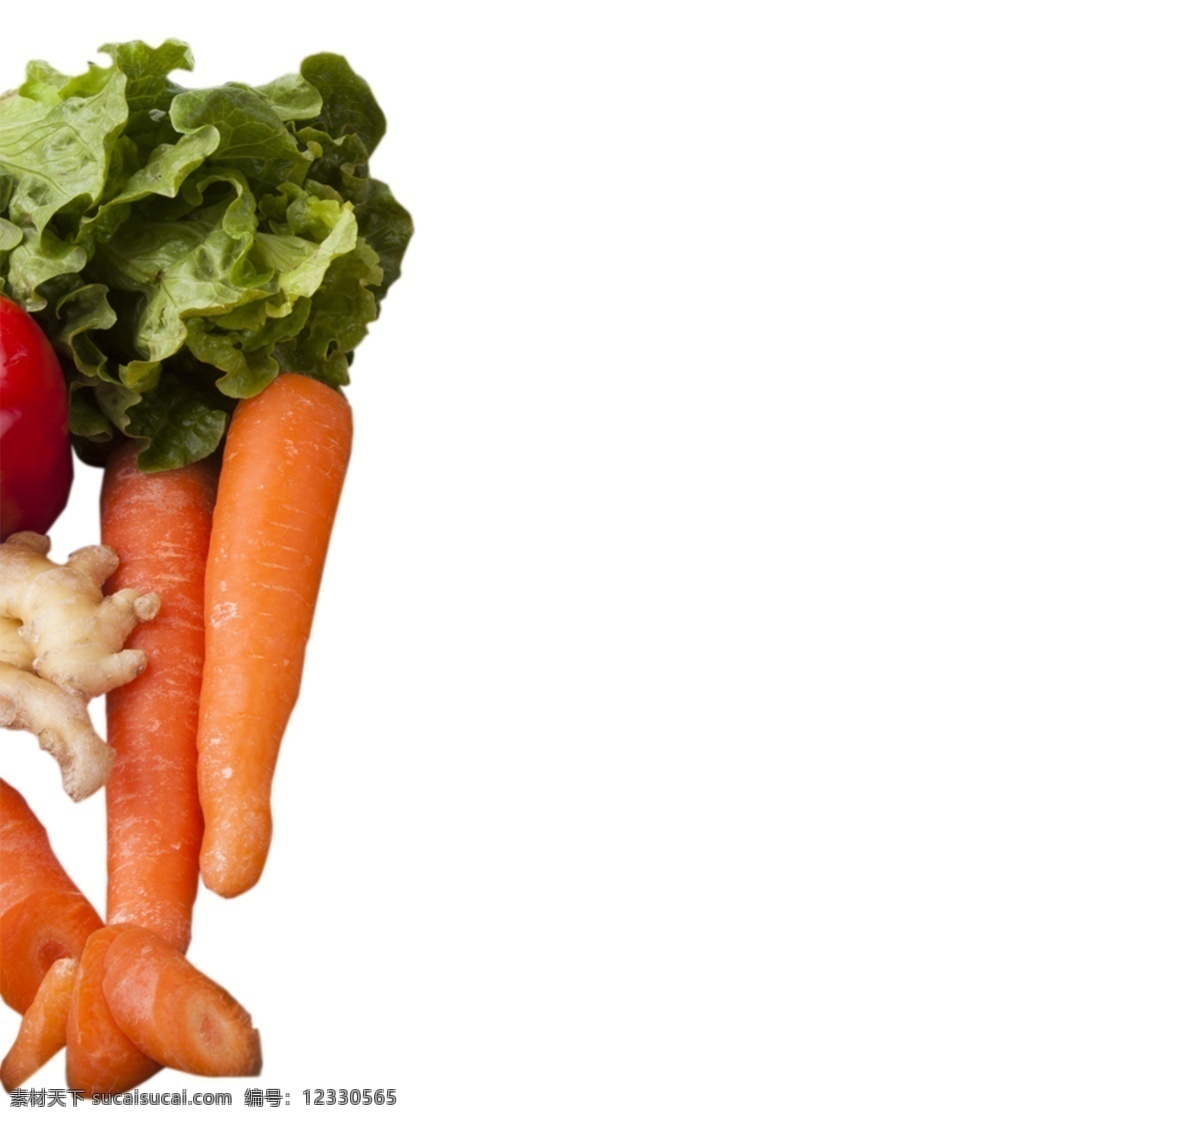 蔬菜 食 材 减肥 食物 农产品 蔬菜水果 纯天然 胡萝卜 绿色 美食 食品 美味 食材 有机的 胡萝卜素 瘦身 减肥食物 农作物